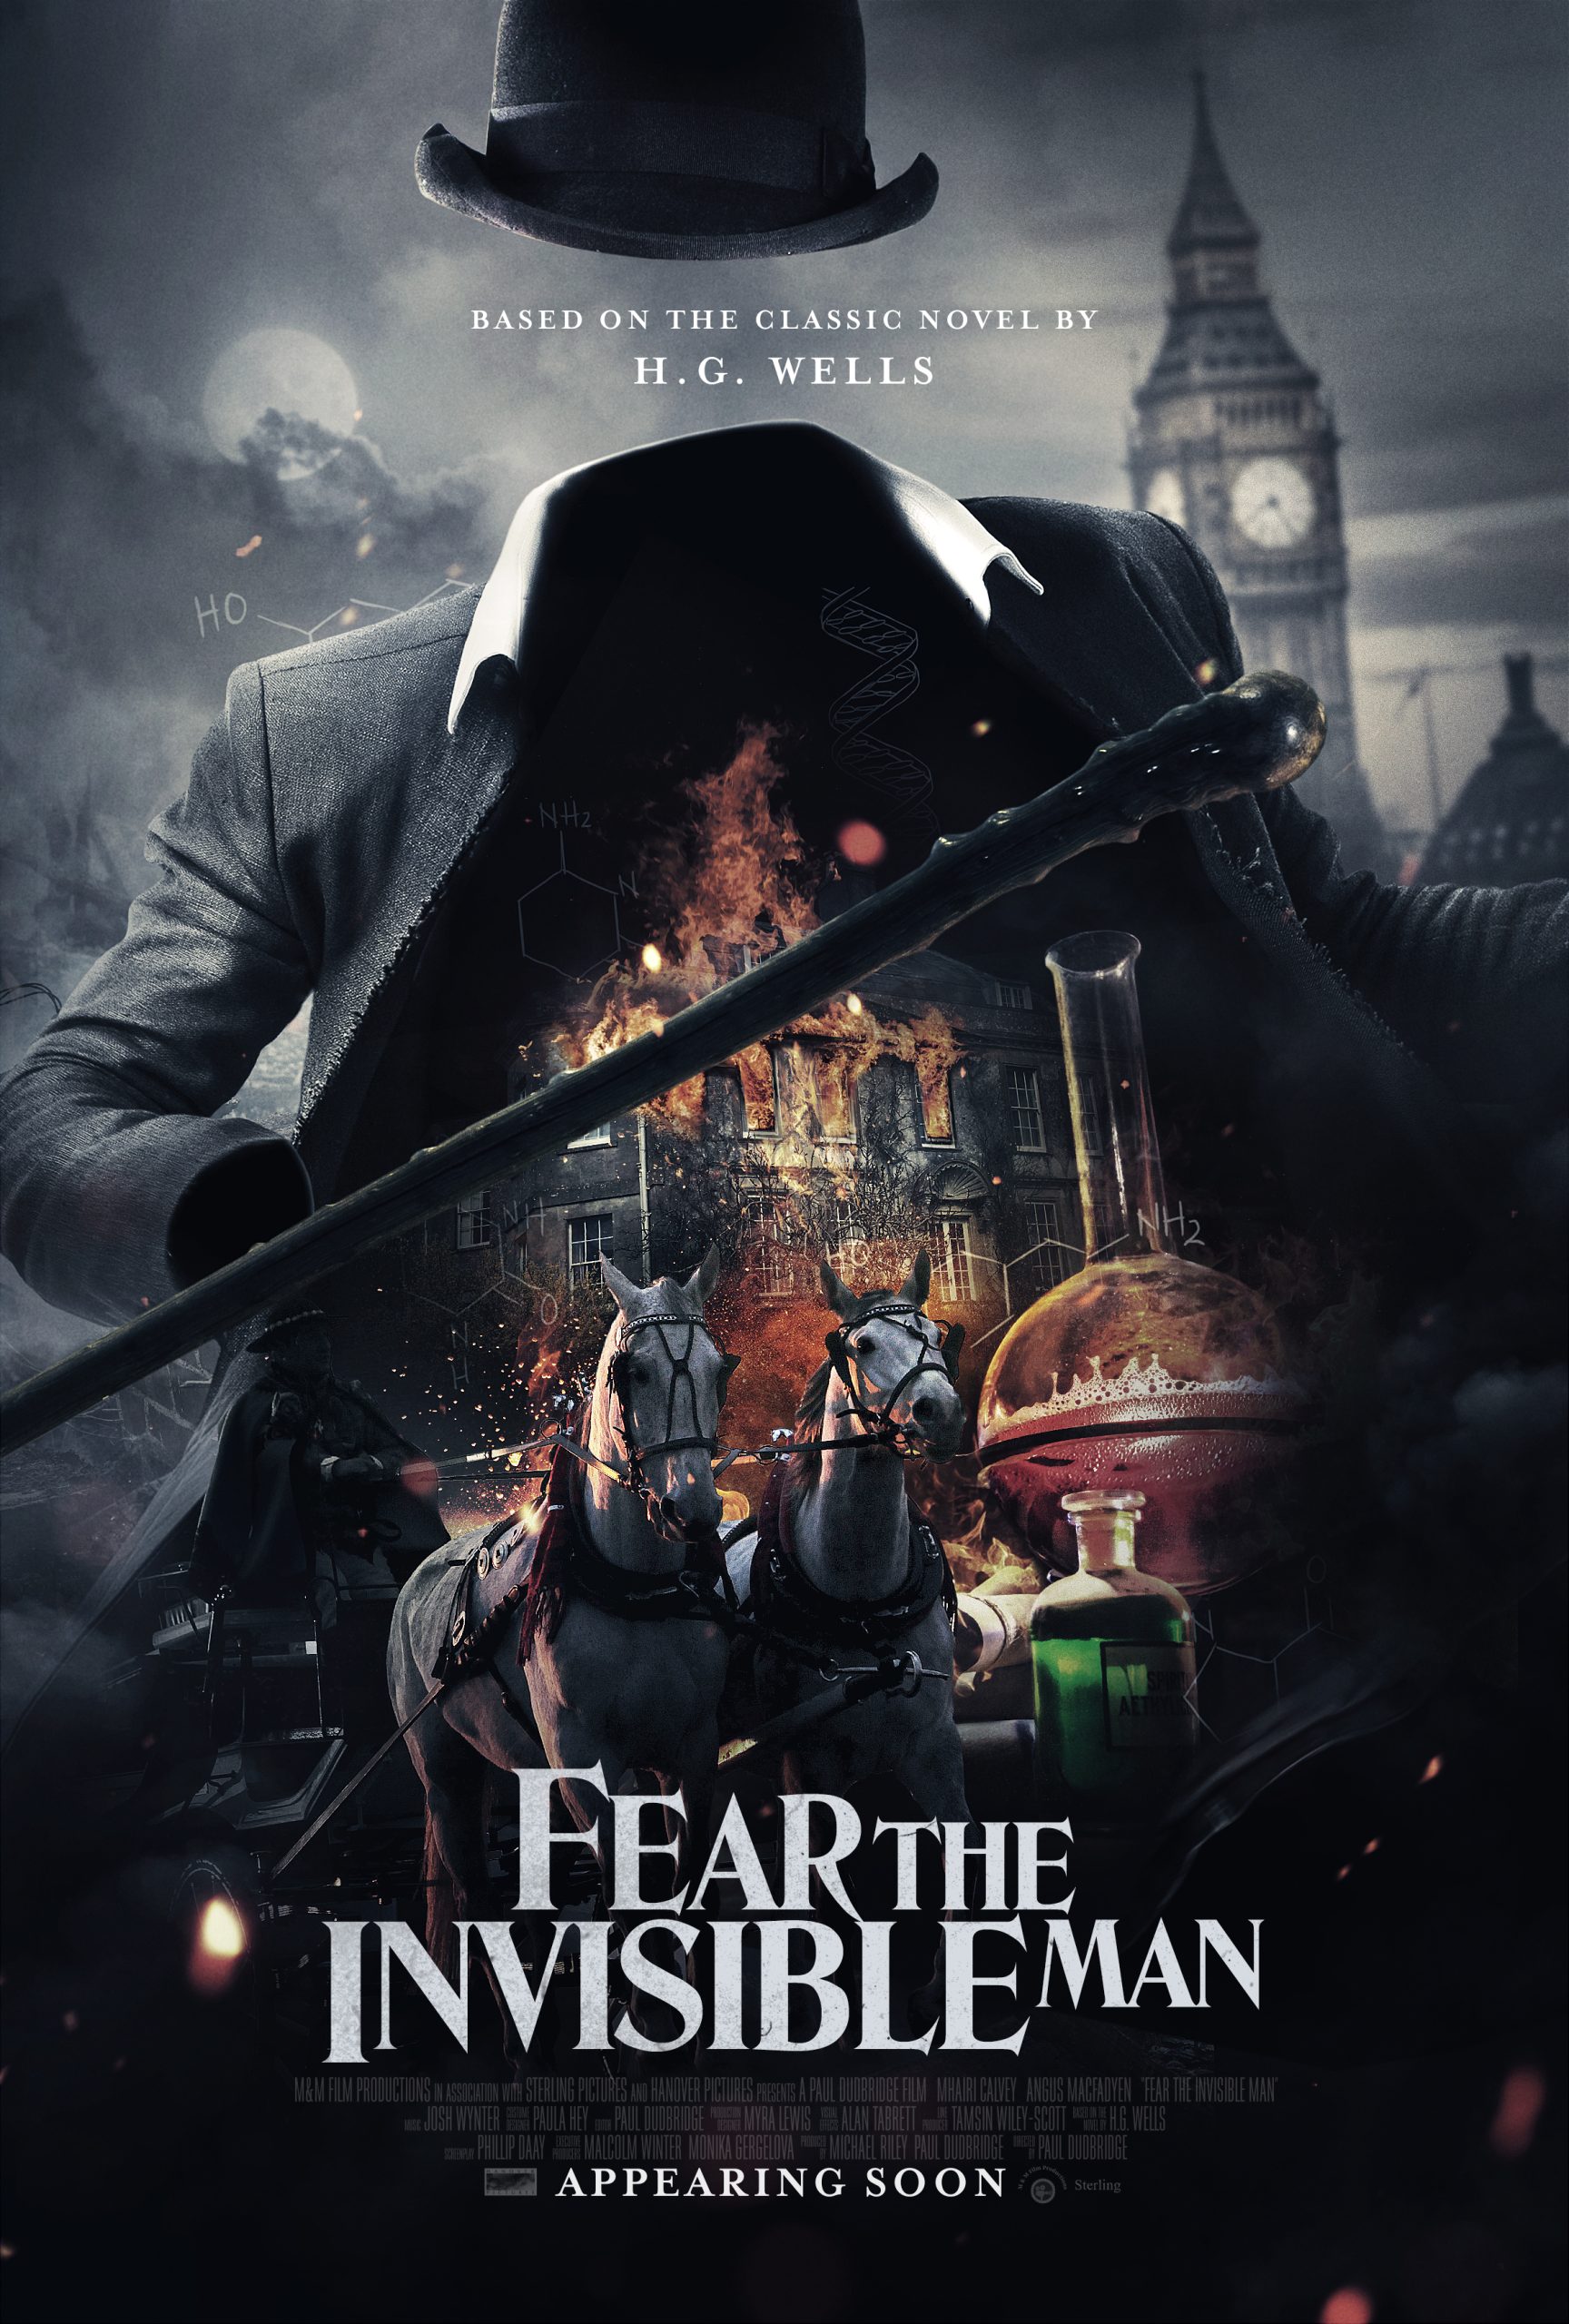 فیلم از مرد نامرئی بترسید Fear the Invisible Man